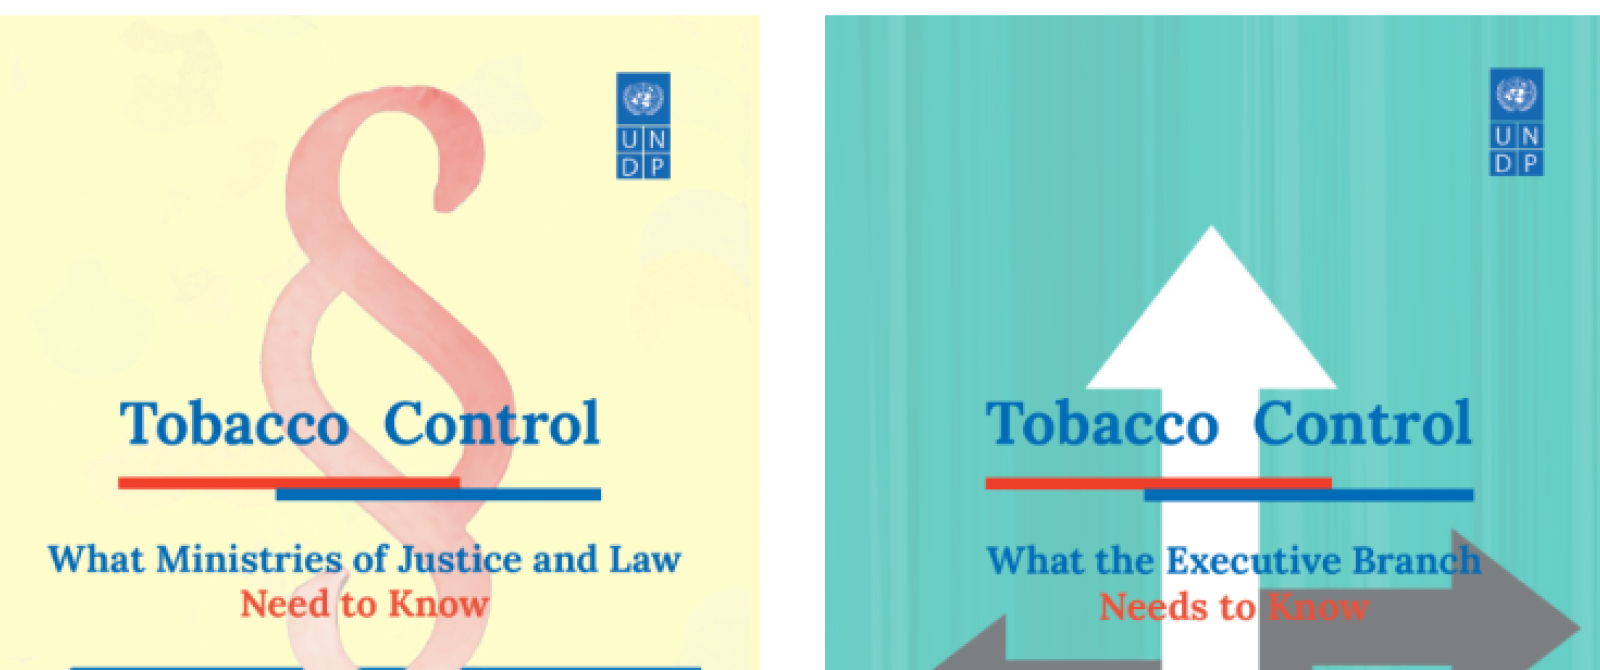 Tobacco Control Sectoral Briefs